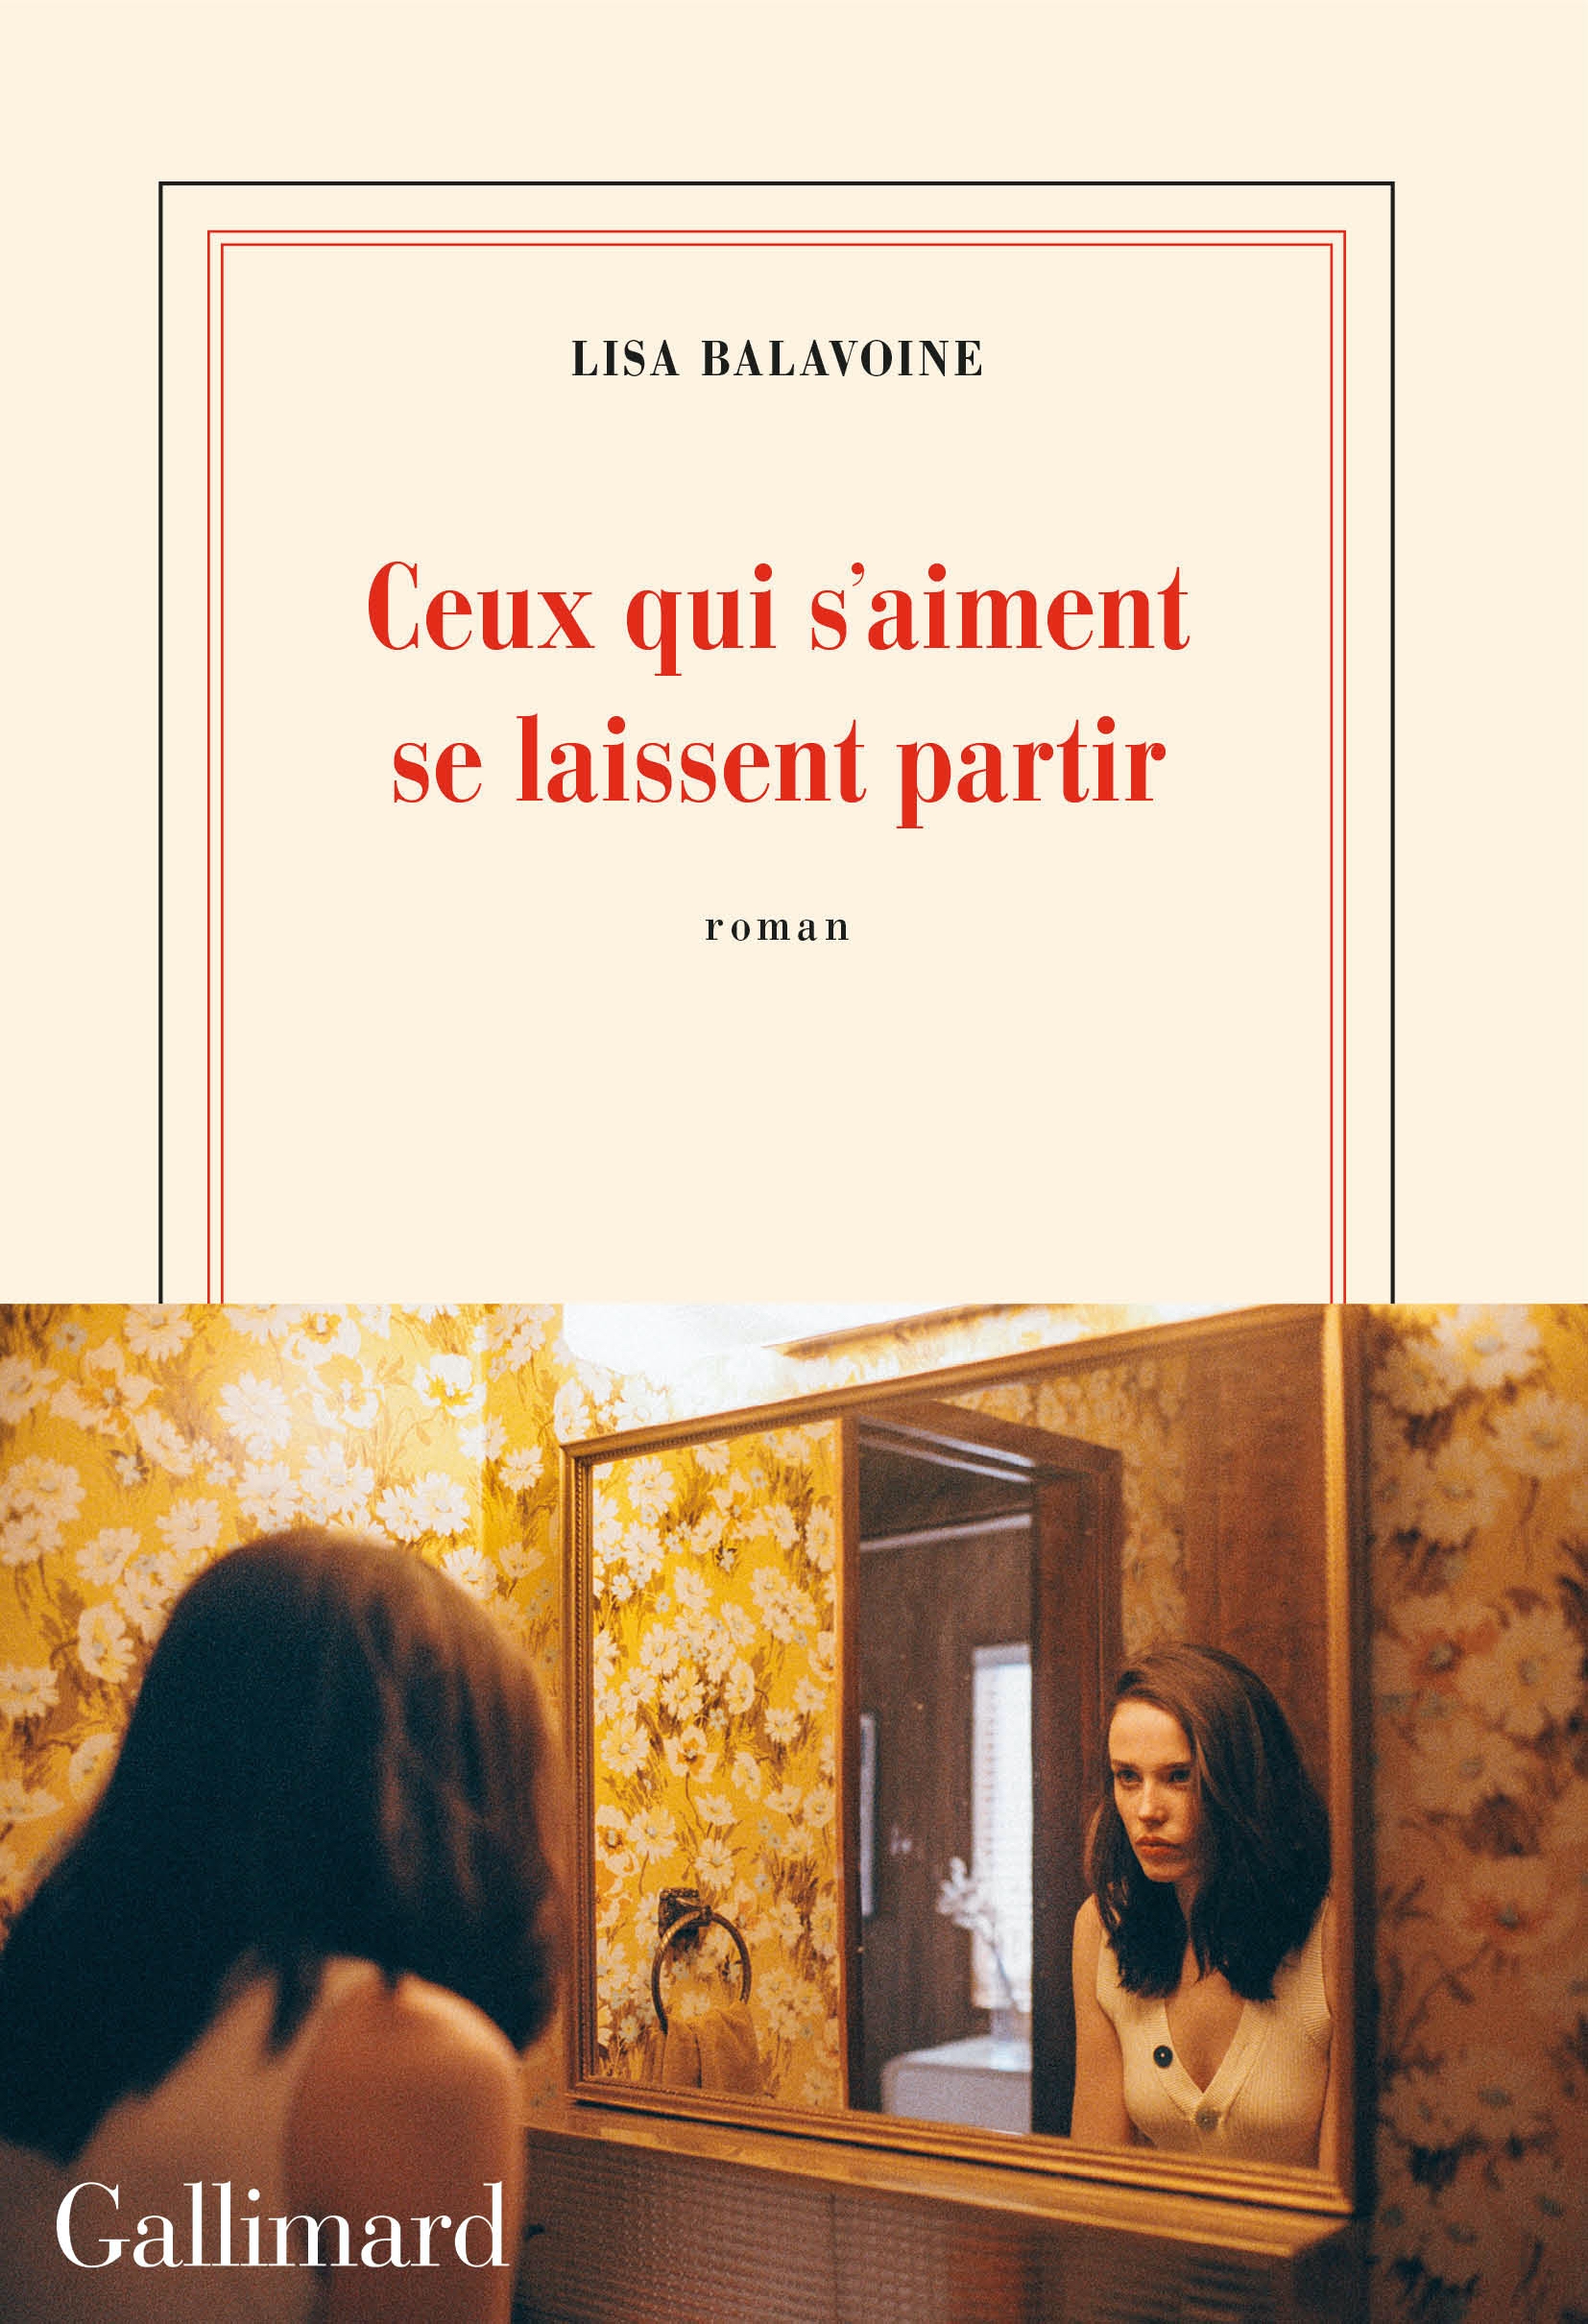 Lisa Balavoine, Ceux qui s'aiment se laissent partir, Gallimard